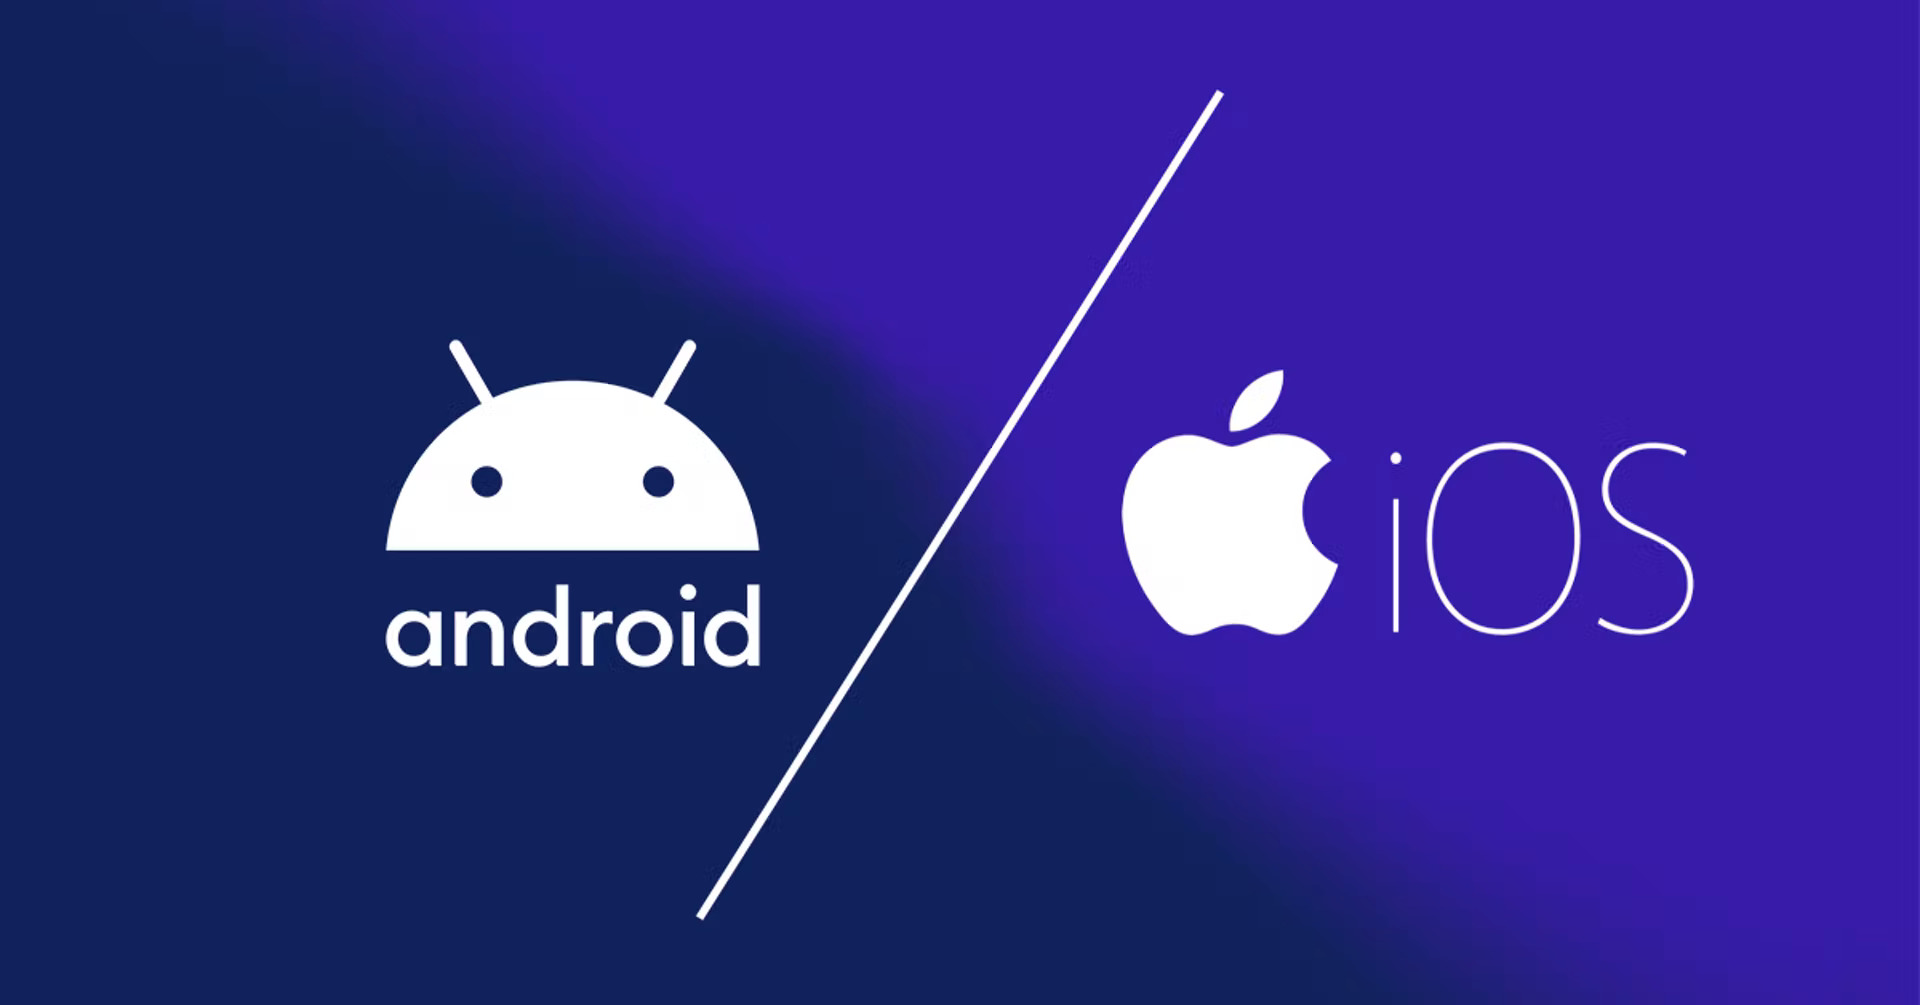 📲 Android vs iOS prós e contras Crehana